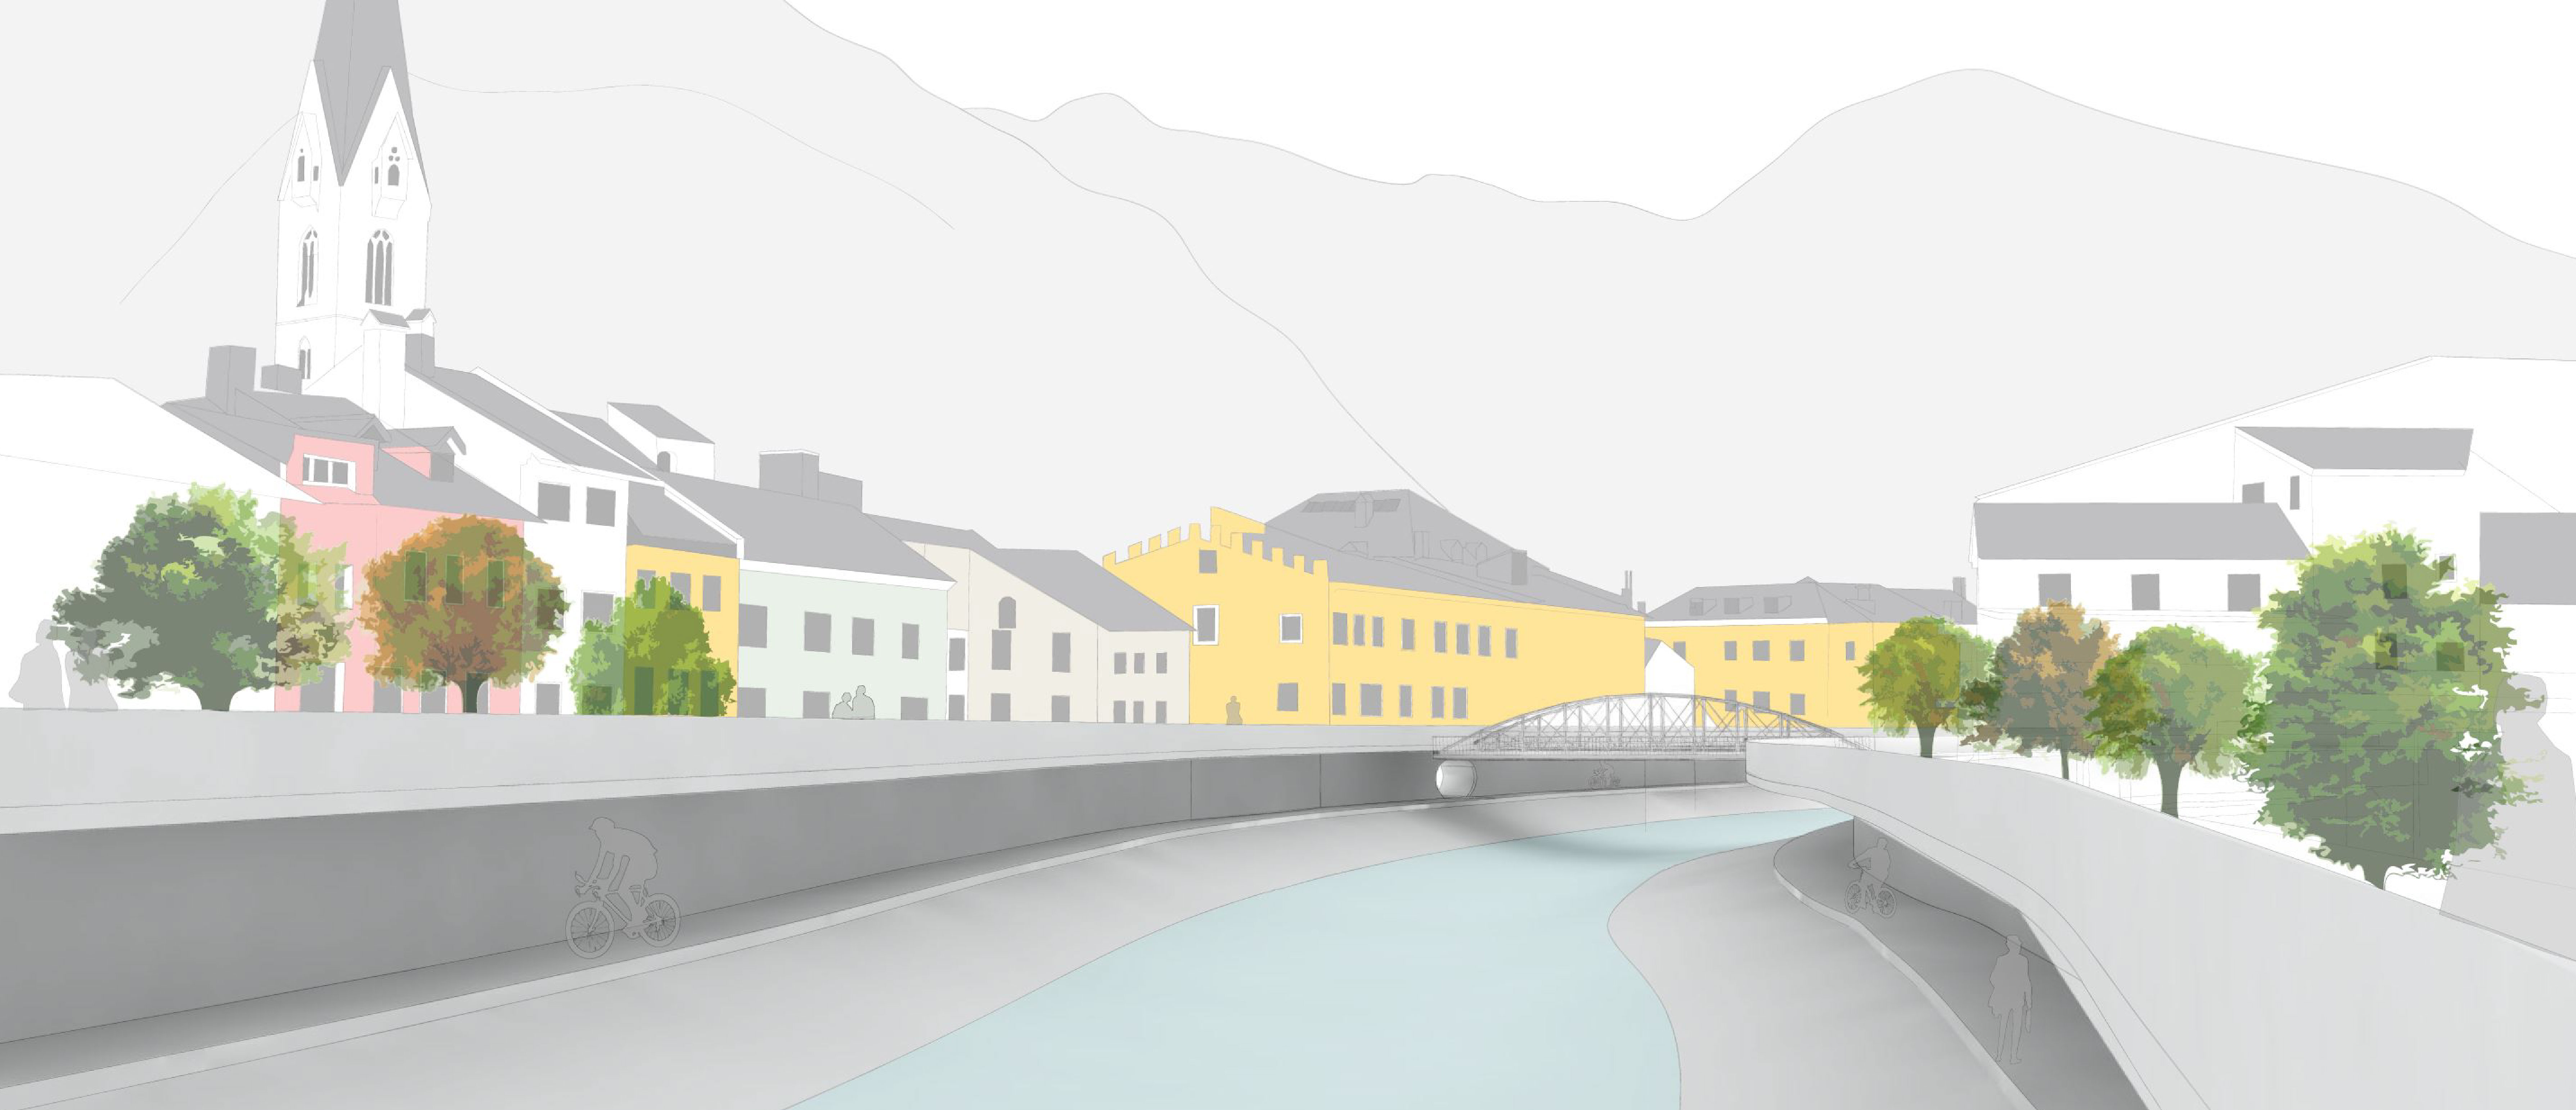 Ideenwettbewerb StadtLandFluss: Flussraum Eisack-Brixen